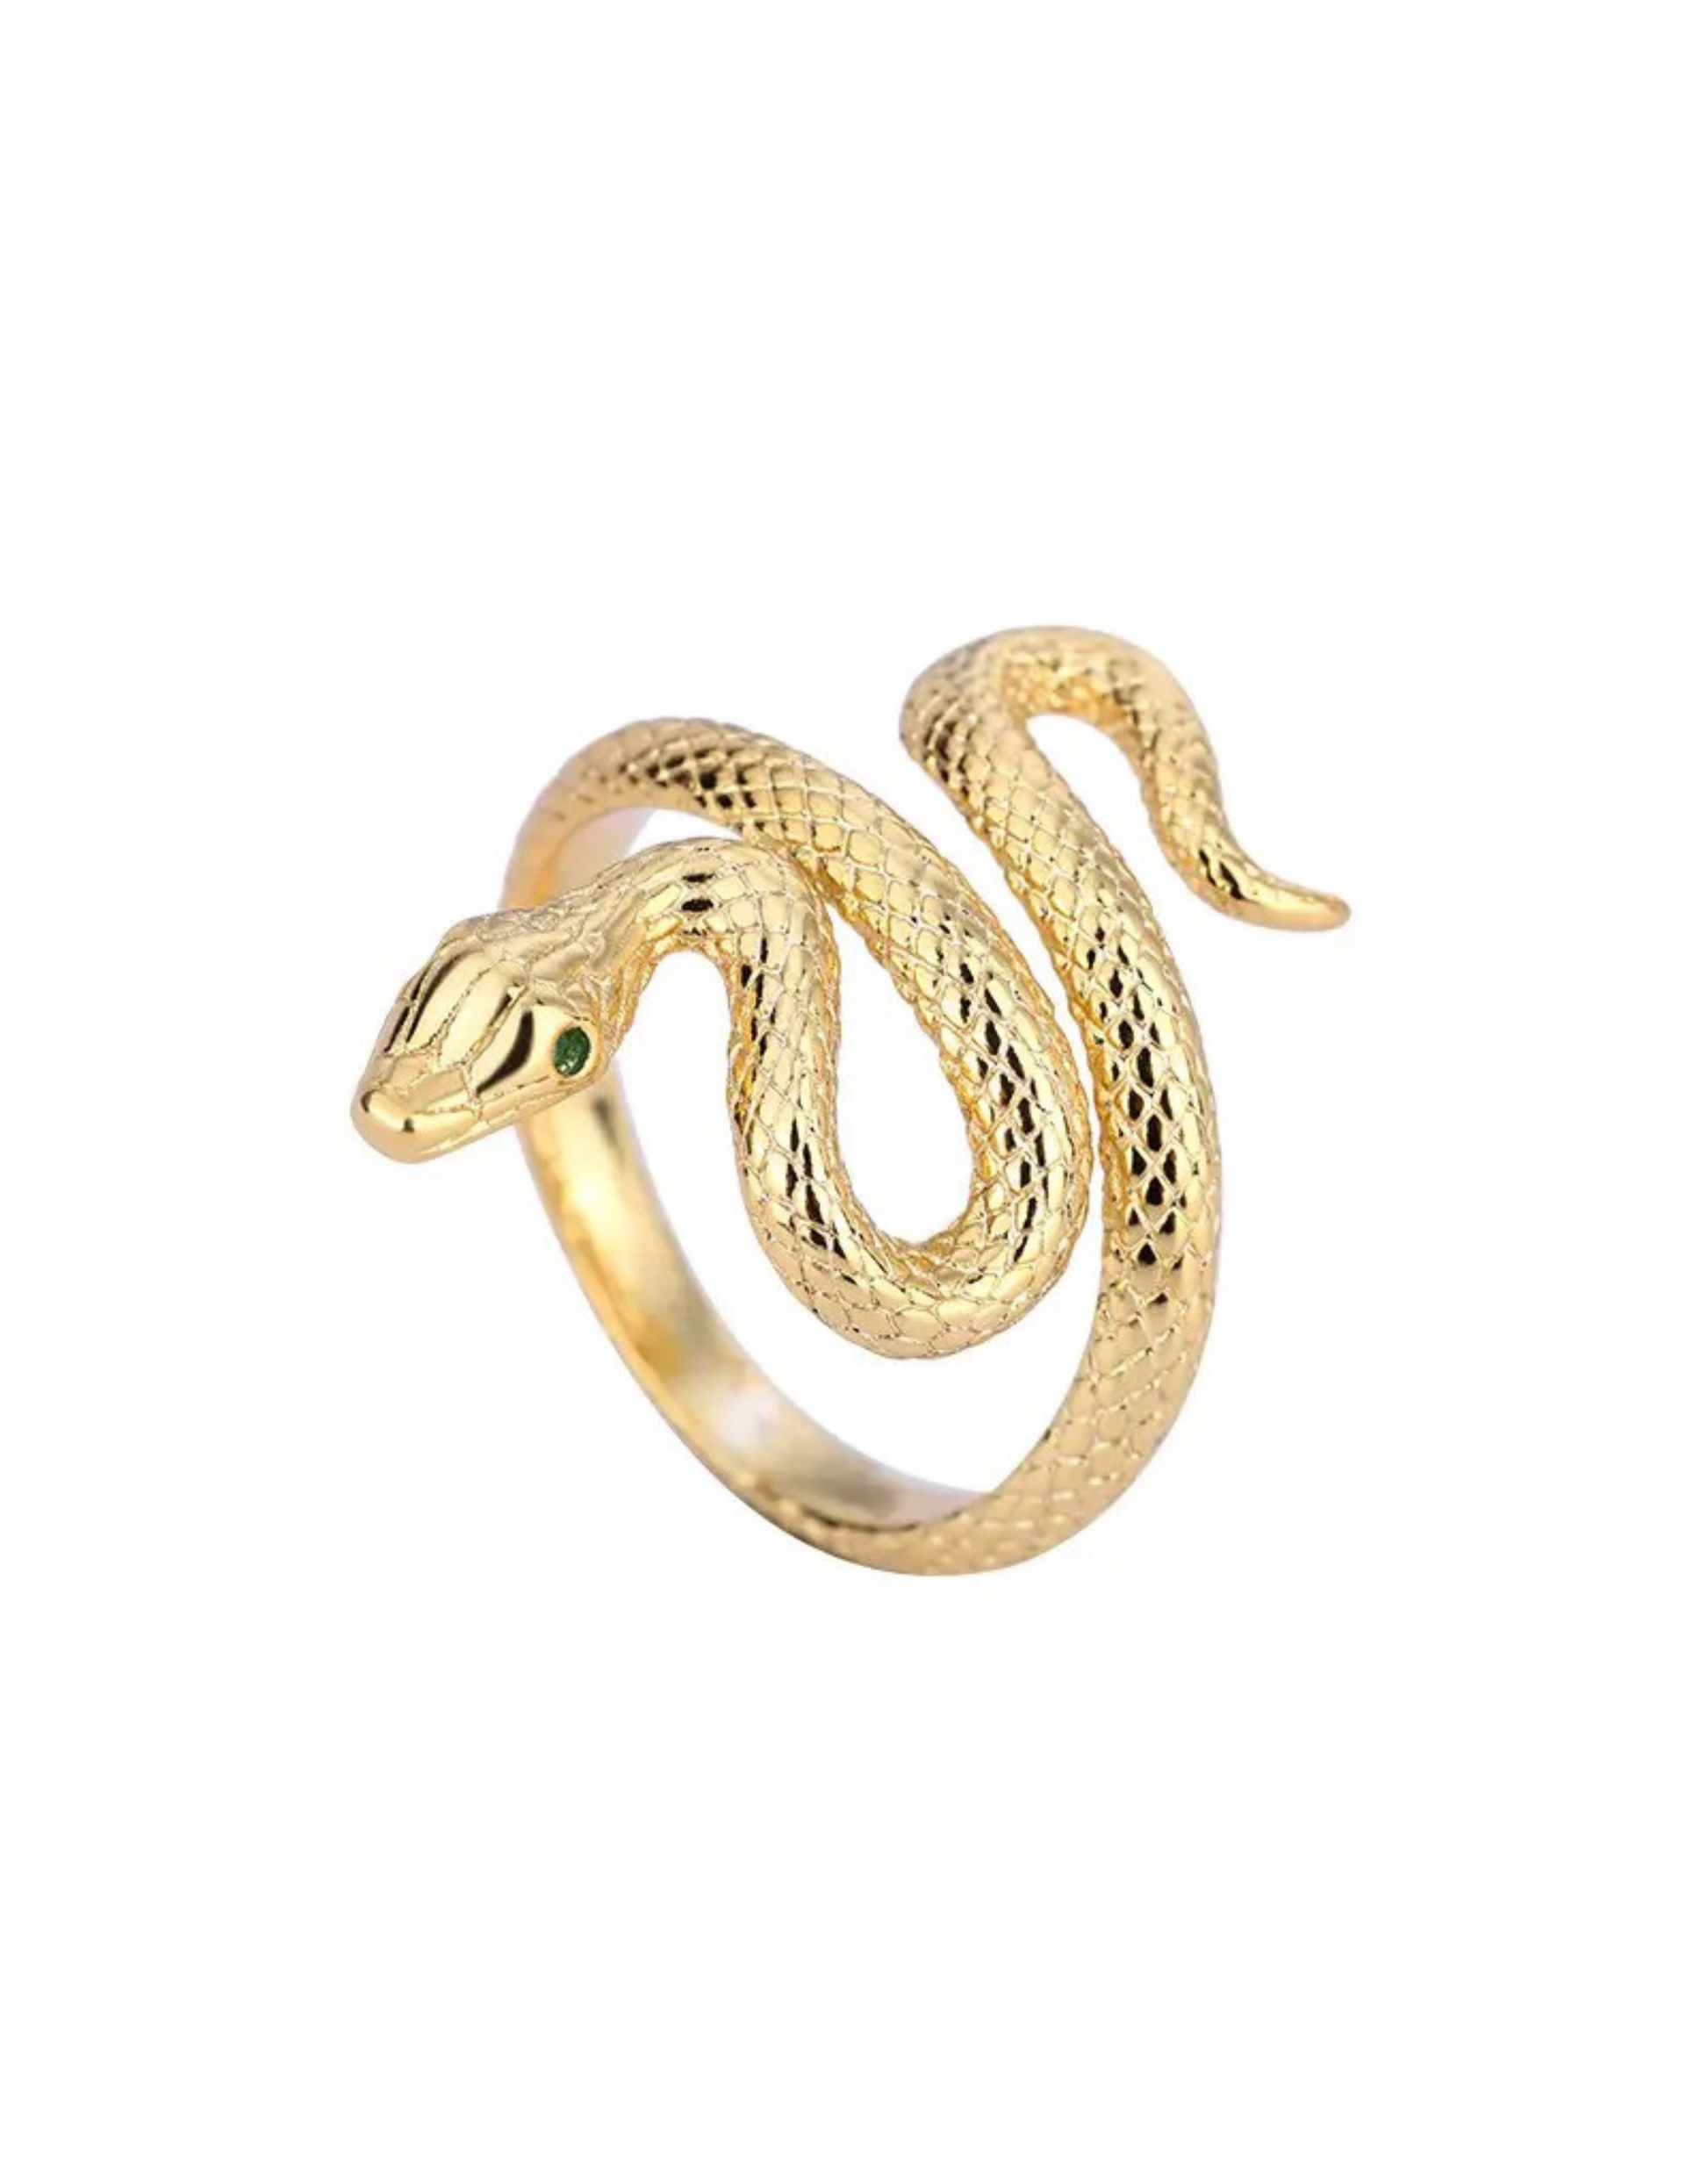 Medusa ring med motiv af slange.  Ringen kan bæres enkelt eller mixes and matches med mange af vores andre ringe.  Materiale: 70% S925 sterling sølv, 30% rustfri stål, guldbelagt, zircon sten